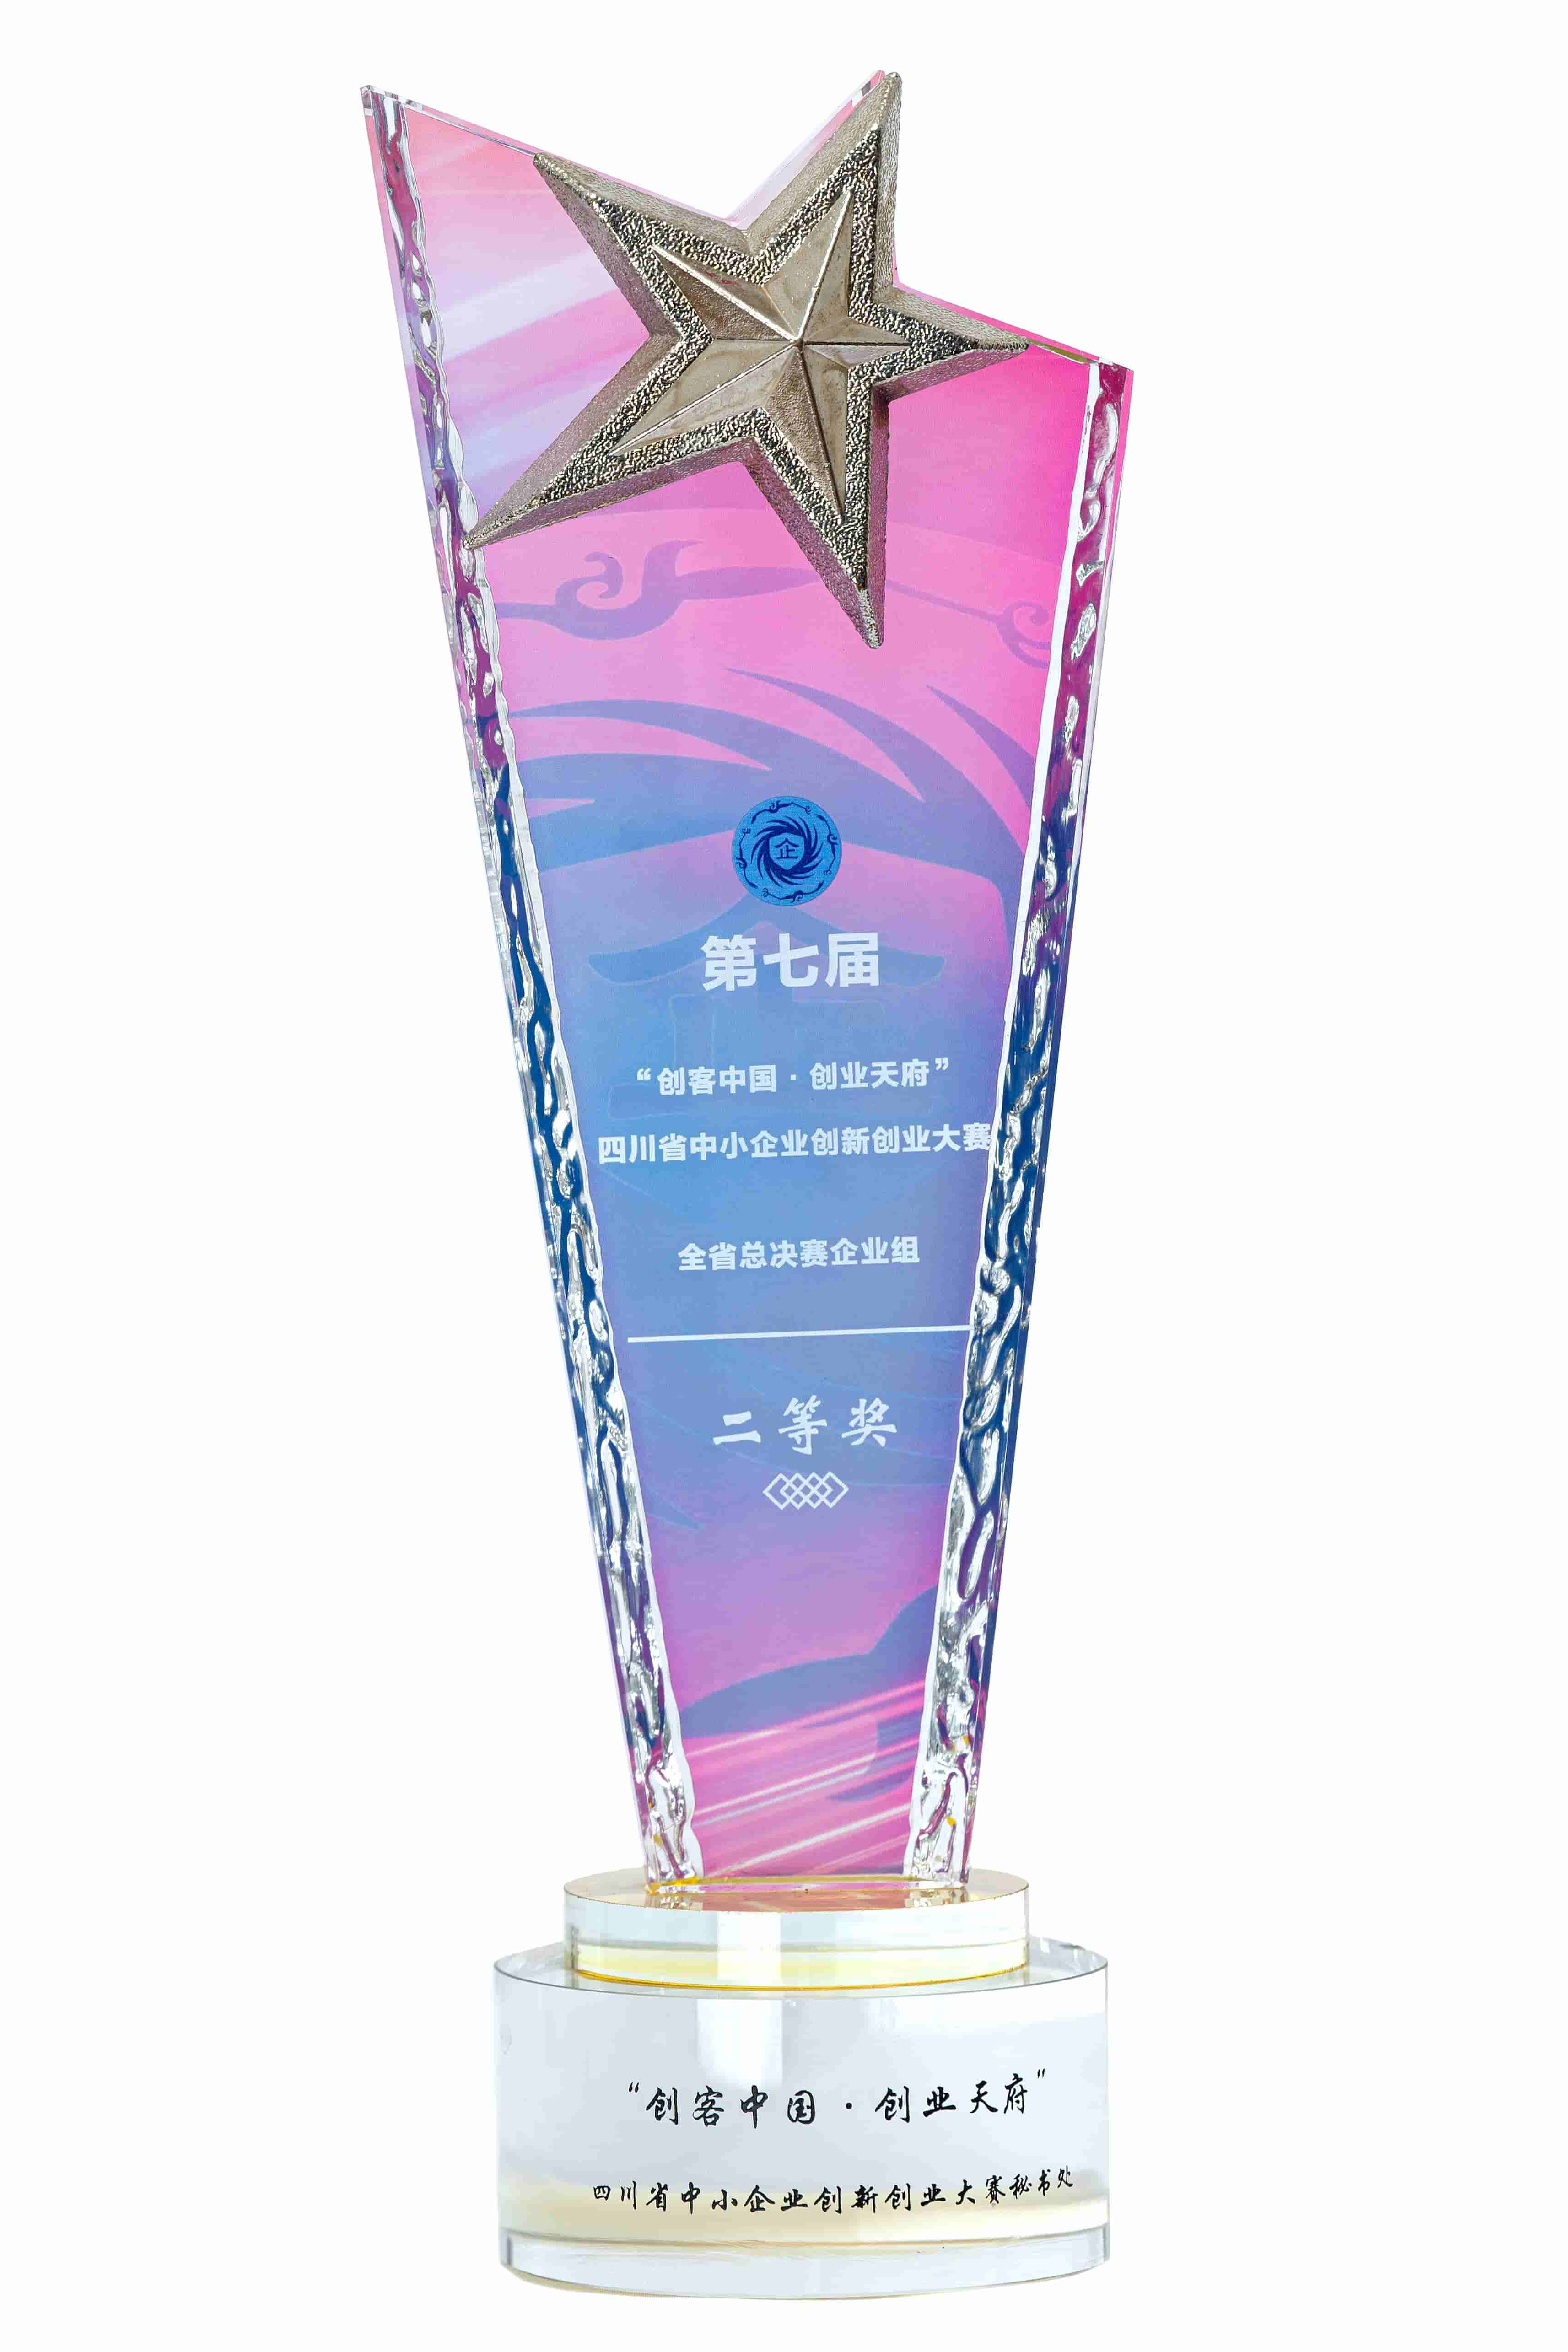  四川省中小企业创新创业大赛二等奖